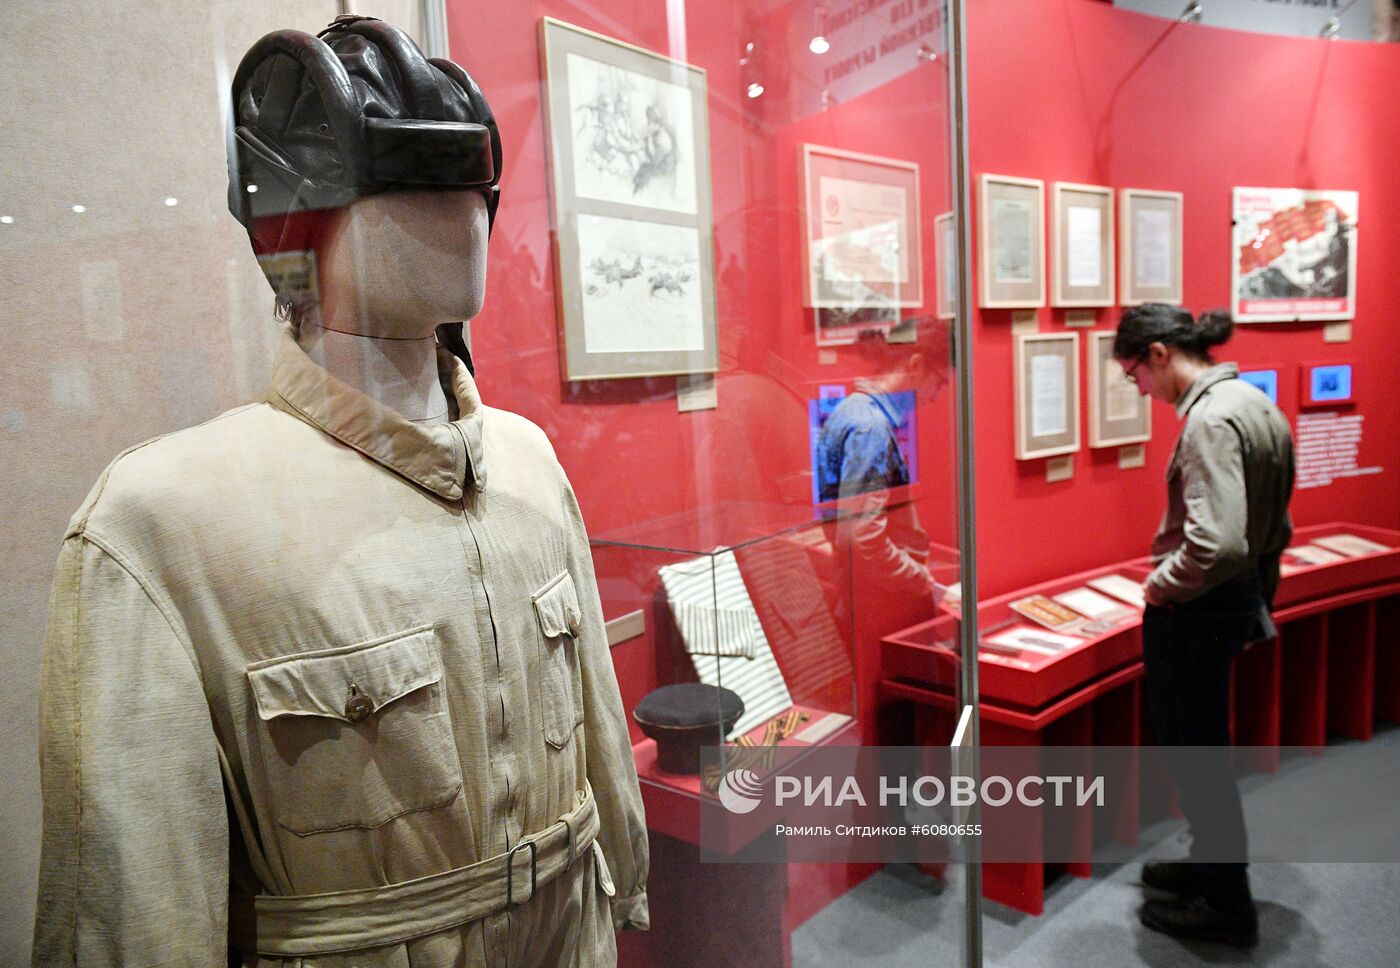 Открытие выставки "Путь к Победе: исторические источники свидетельствуют"